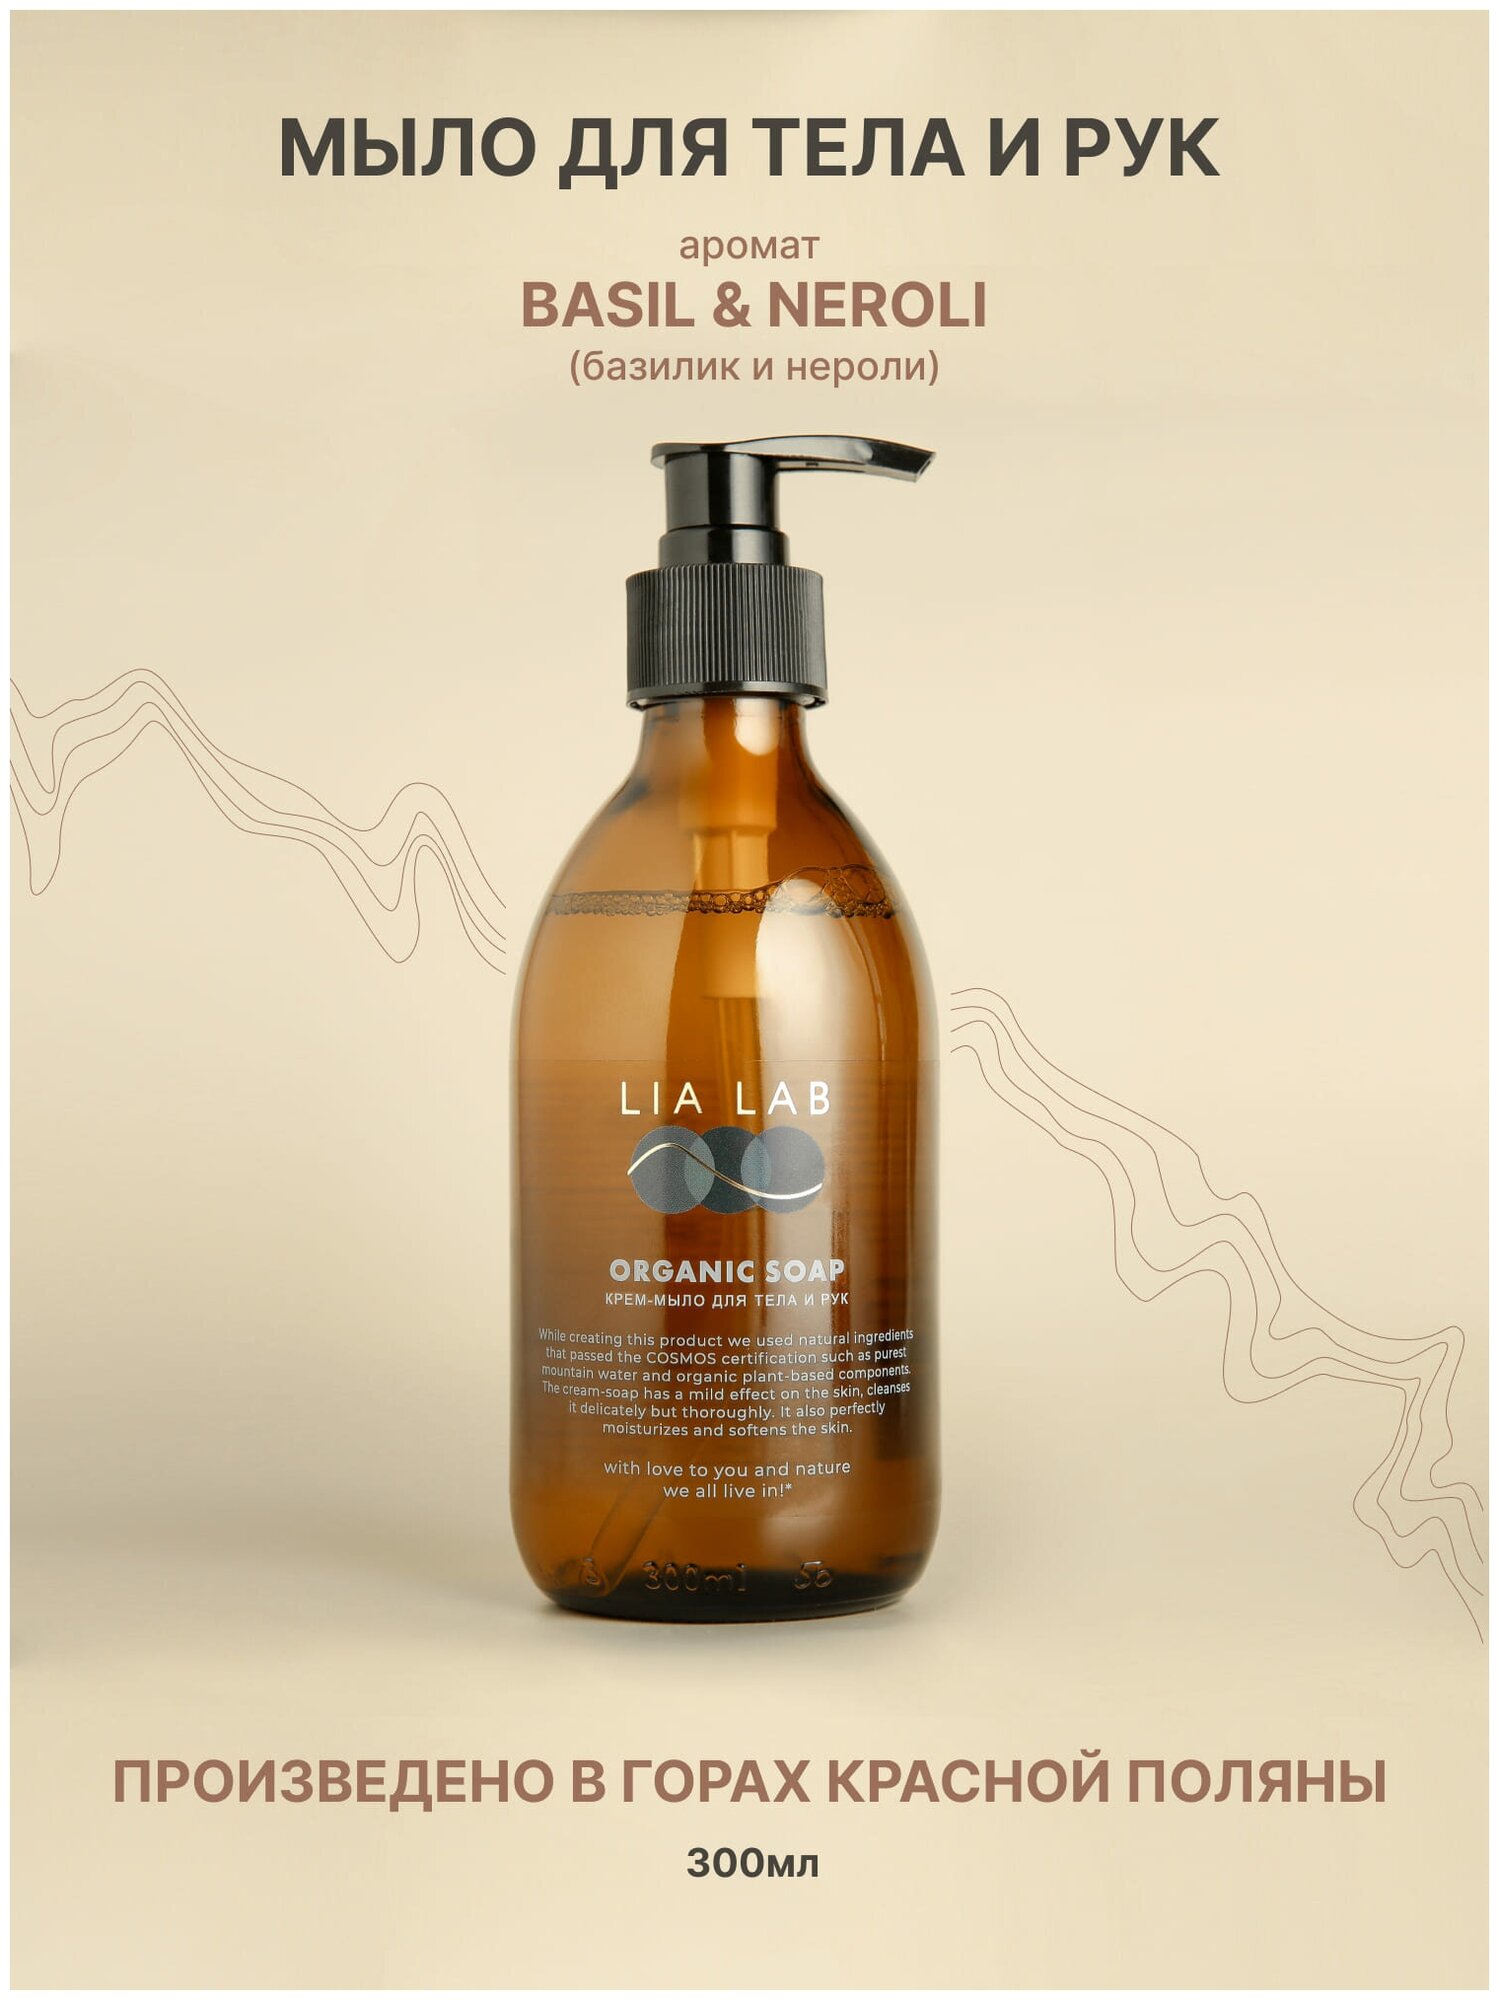 Крем-мыло LIA LAB ORGANIC с ароматом Basil & Neroli для тела и рук органическое жидкое мыло 300 мл.